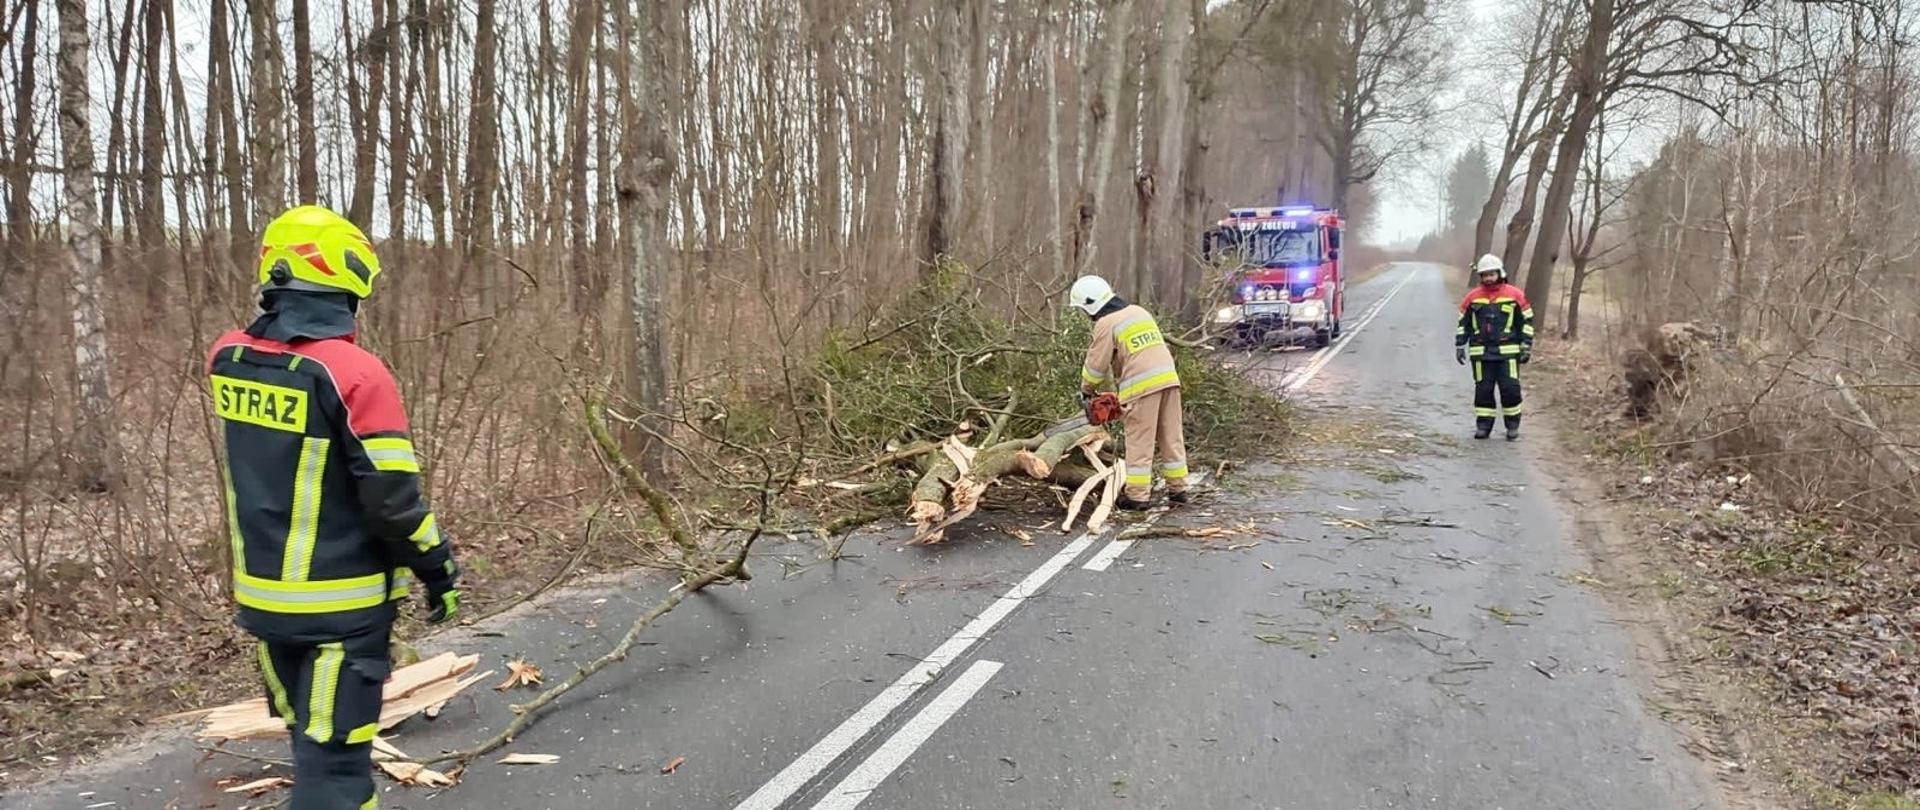 Strażak przy pomocy pilarki spalinowej do drewna usuwa drzewo powalone na drogę. Dwaj strażacy zabezpieczają drogę blokując przejazd. W tle stoi samochód pożarniczy z włączoną sygnalizacją świetlną.